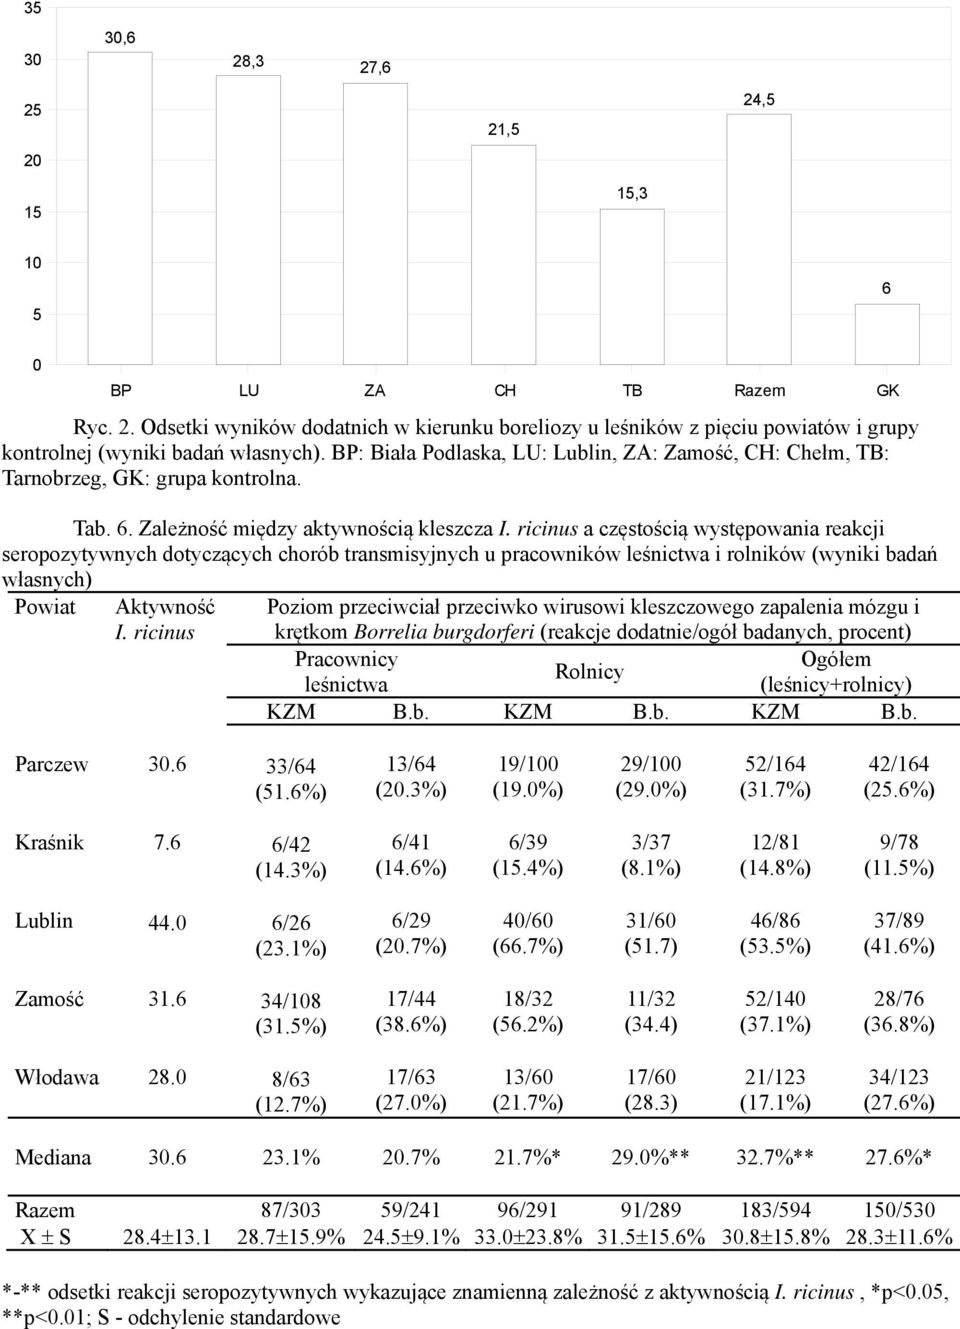 ricinus a częstością występowania reakcji seropozytywnych dotyczących chorób transmisyjnych u pracowników leśnictwa i rolników (wyniki badań własnych) Powiat BP LU ZA CH TB Razem GK Aktywność I.